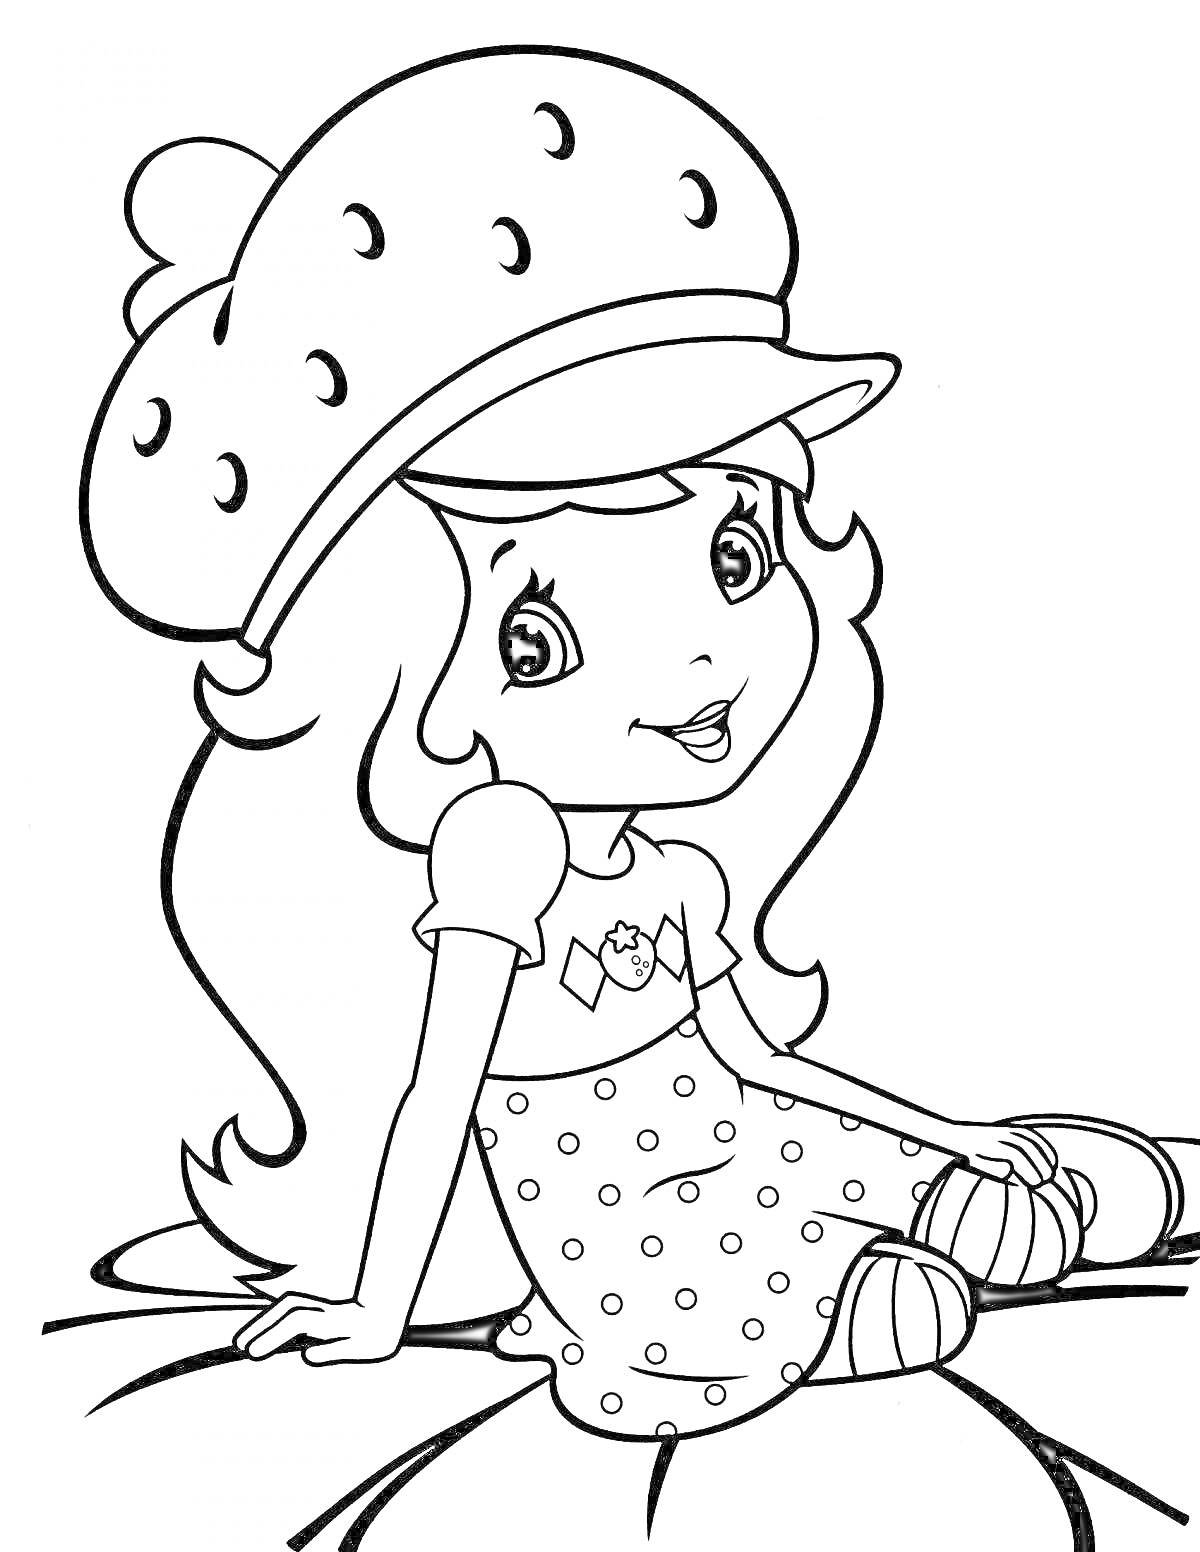 Раскраска Девочка в шляпе-землянике и платье в горошек, сидящая на клубнике